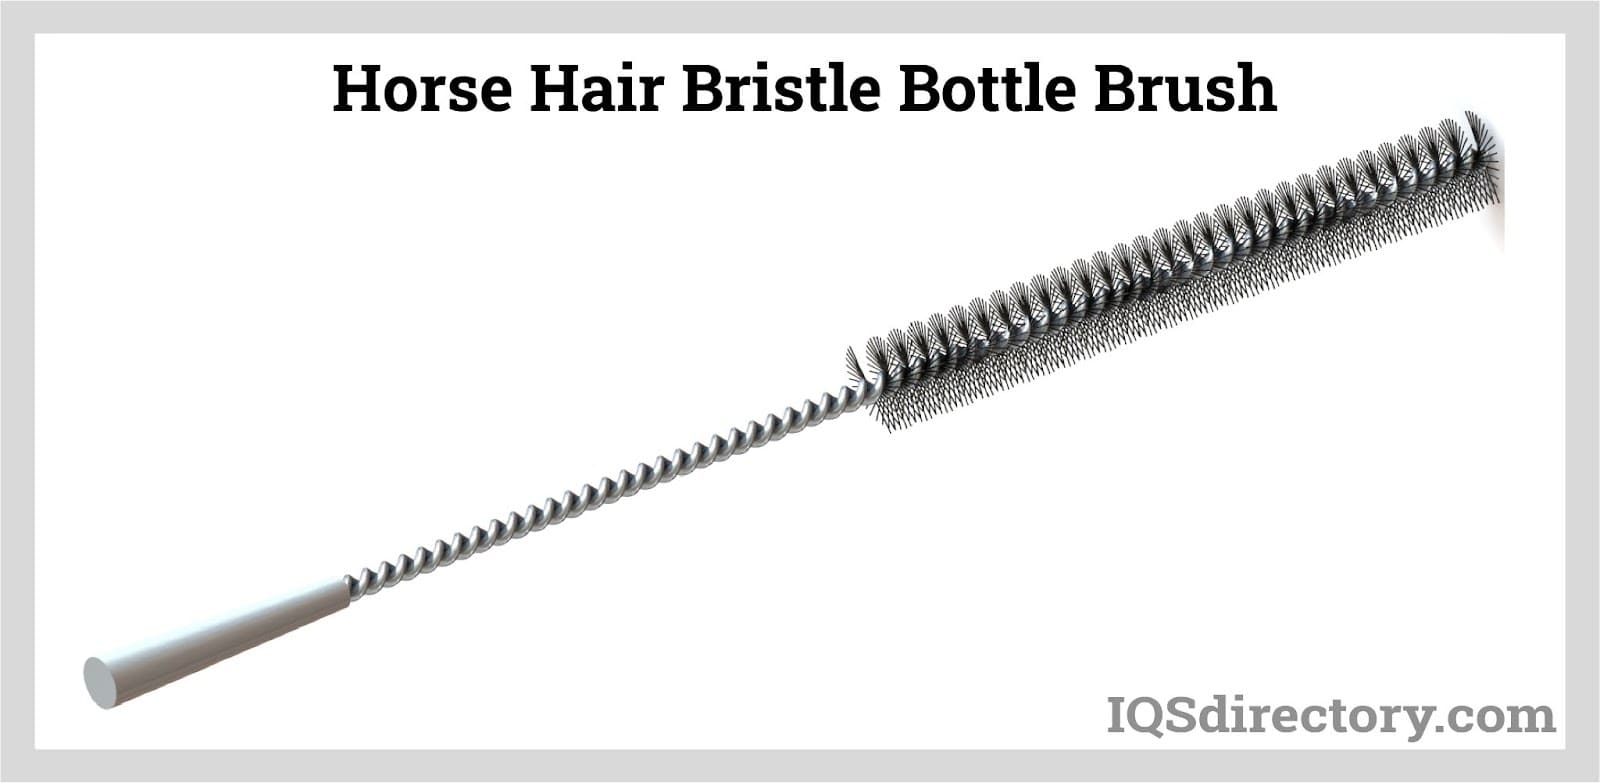 Horse Hair Bristle Bottle Brush